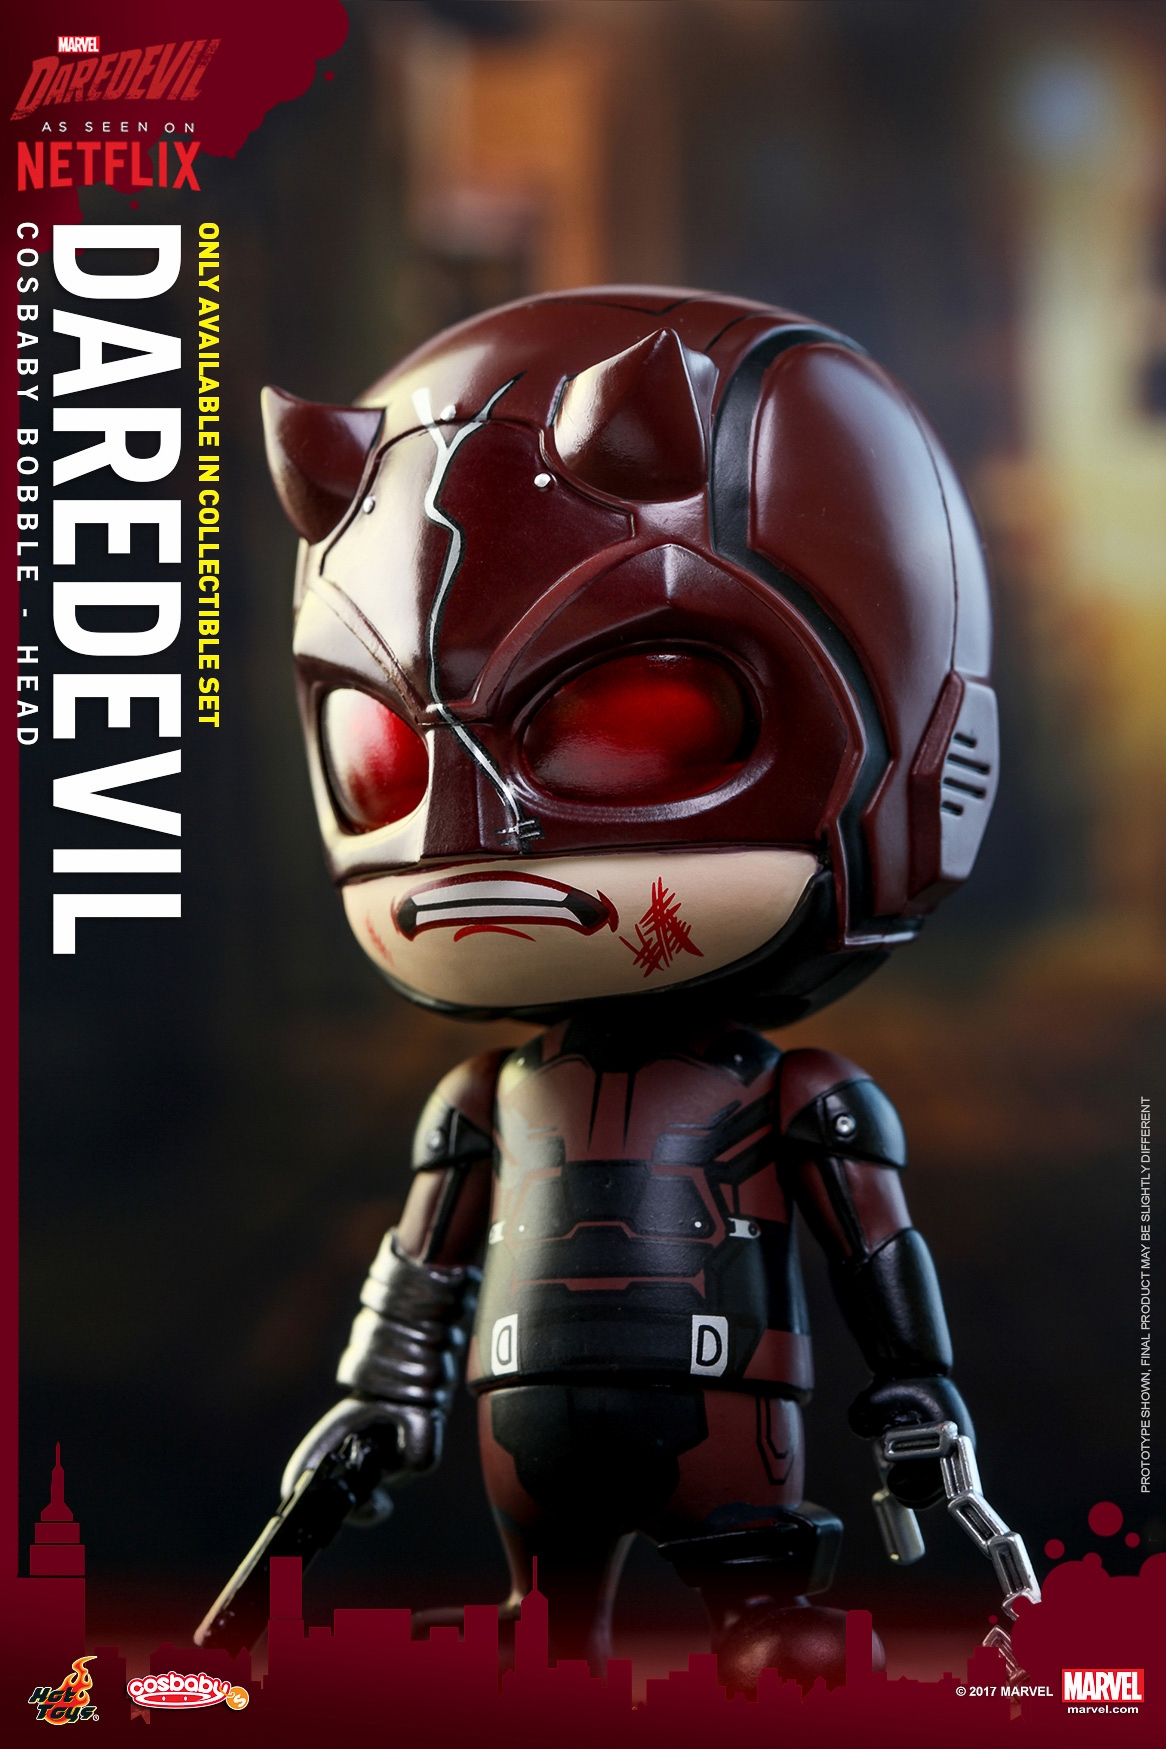 Hot-Toys-Netflix-Marvel-Daredevil-Cosbaby-Set-006.jpg